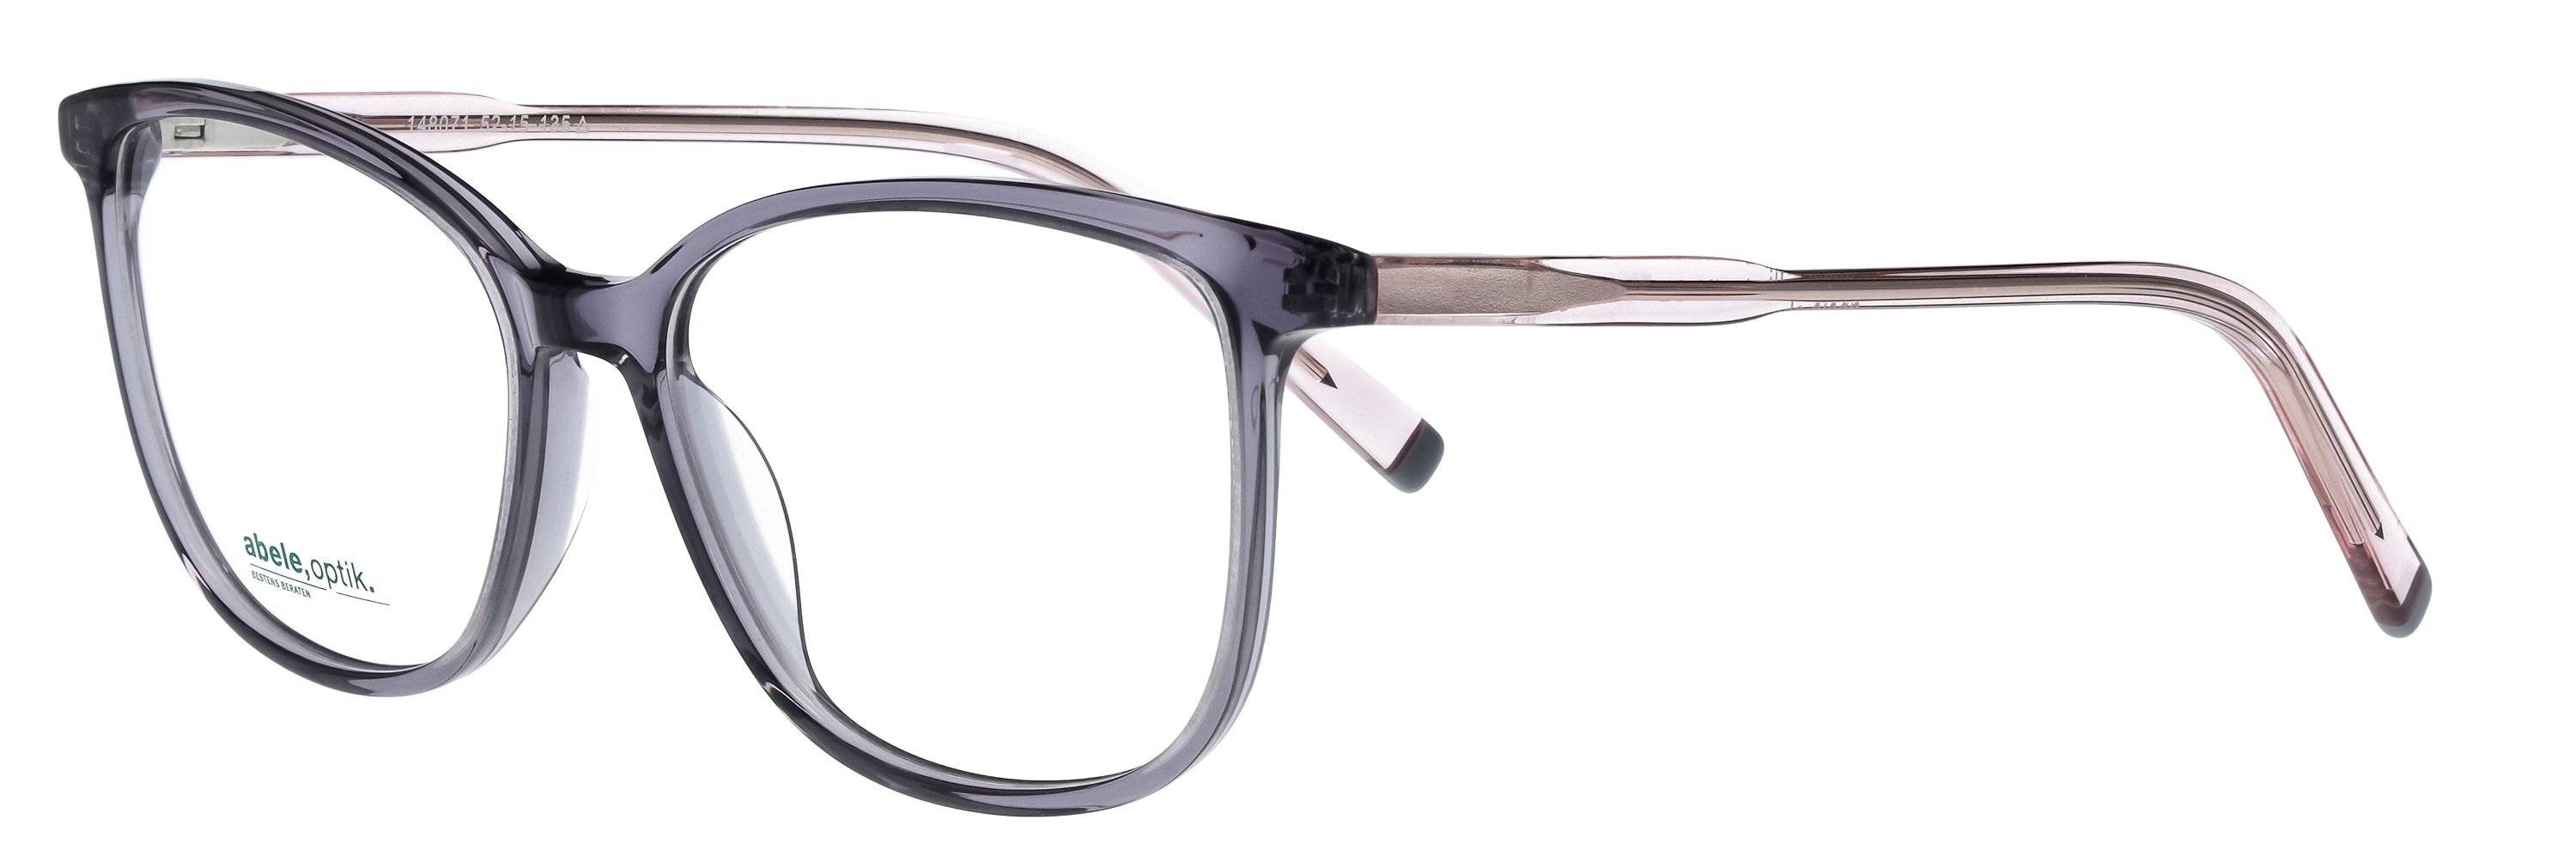 Das Bild zeigt die Korrektionsbrille 148071 von der Marke Abele Optik in grau-lila transparent.